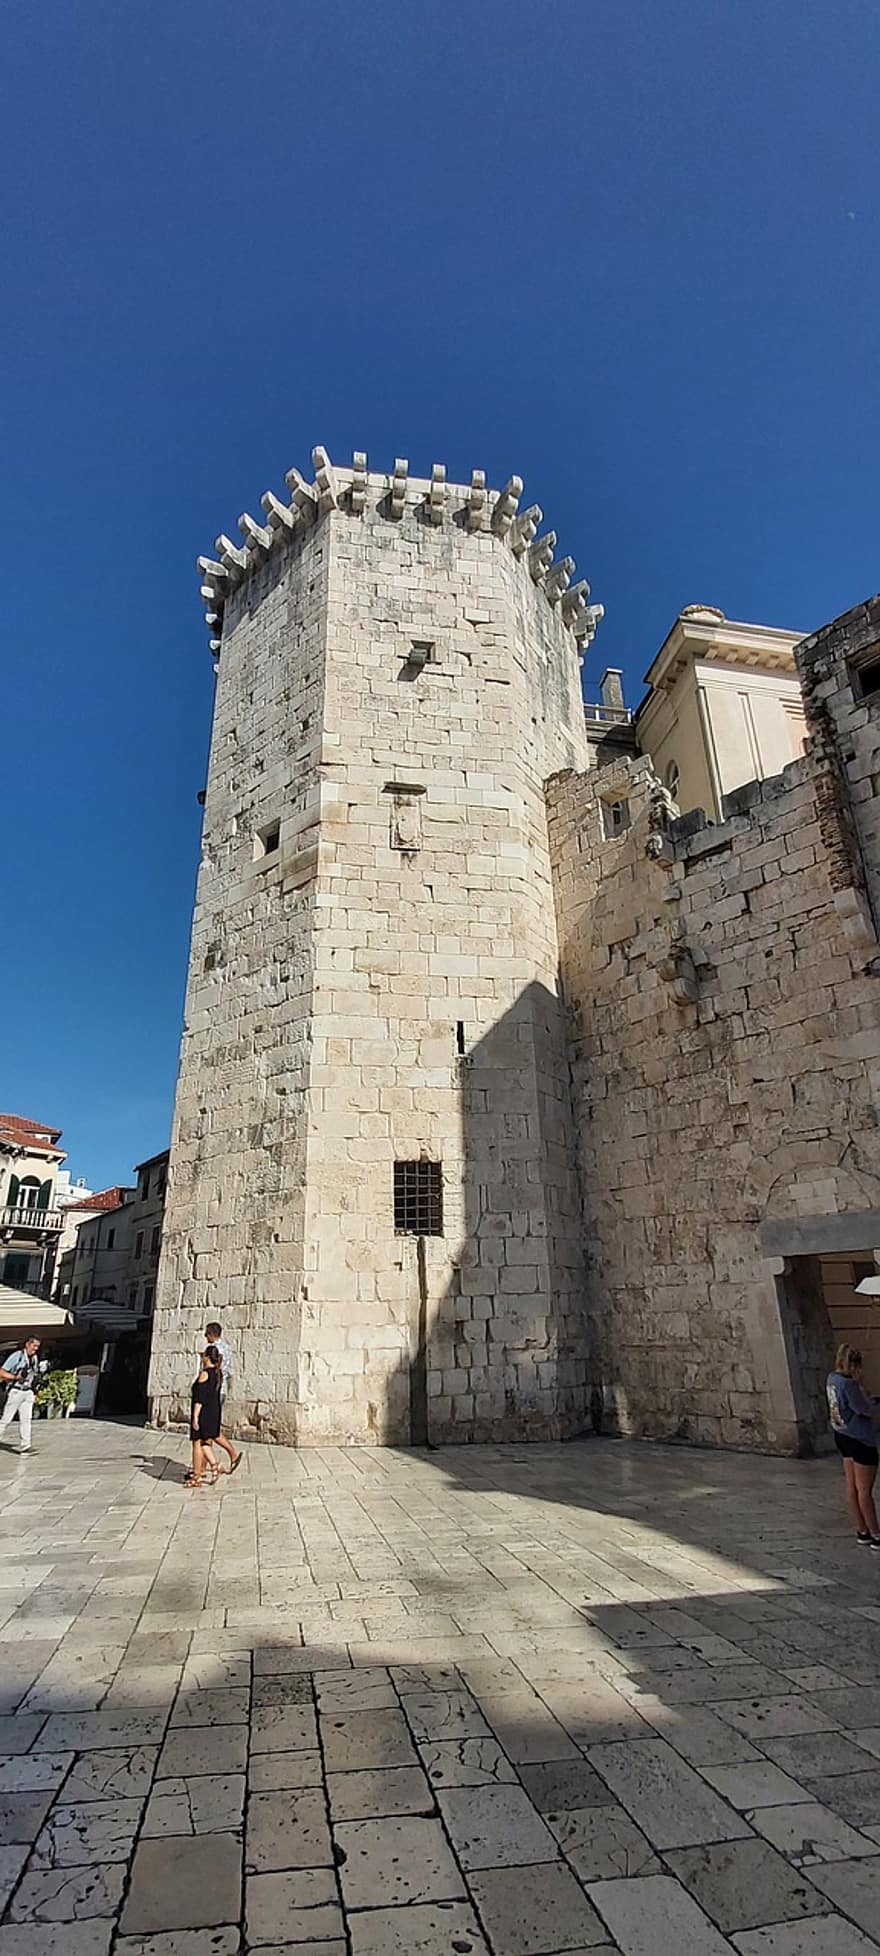 benátská věž, hrad, rozdělit, chorvatsko, věž, středověký, římský, starověké, architektura, historický, mezník